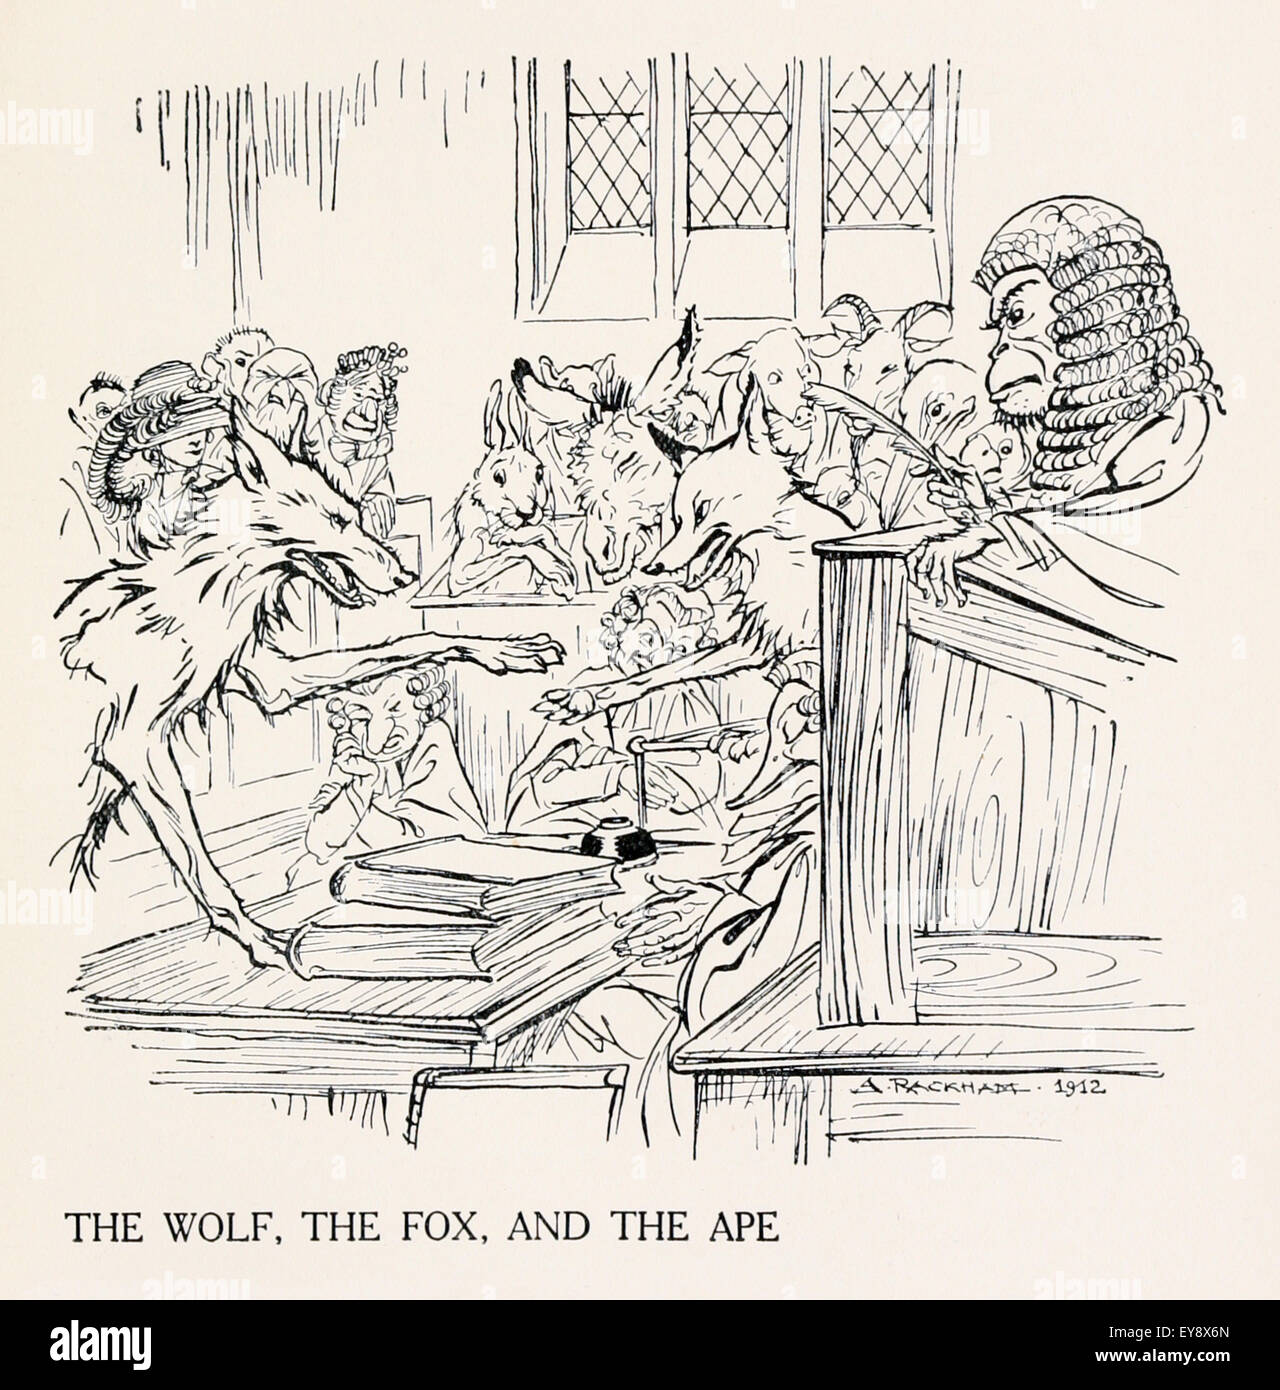 "Der Wolf, der Fuchs und der Affe" Fabel von Aesop (ca. 600). Ein Affe saß als Richter zwischen einem Fuchs, angeklagt des Diebstahls, und Wolf, der Ankläger. Nach der Verhandlung beurteilt das Affe der Wolf nichts verloren, aber der Fuchs gestohlen. Moral: Unehrlich, wenn sie ehrlich, handeln bekommen keinen Kredit. Illustration von Arthur Rackham (1867-1939). Siehe Beschreibung für mehr Informationen. Stockfoto